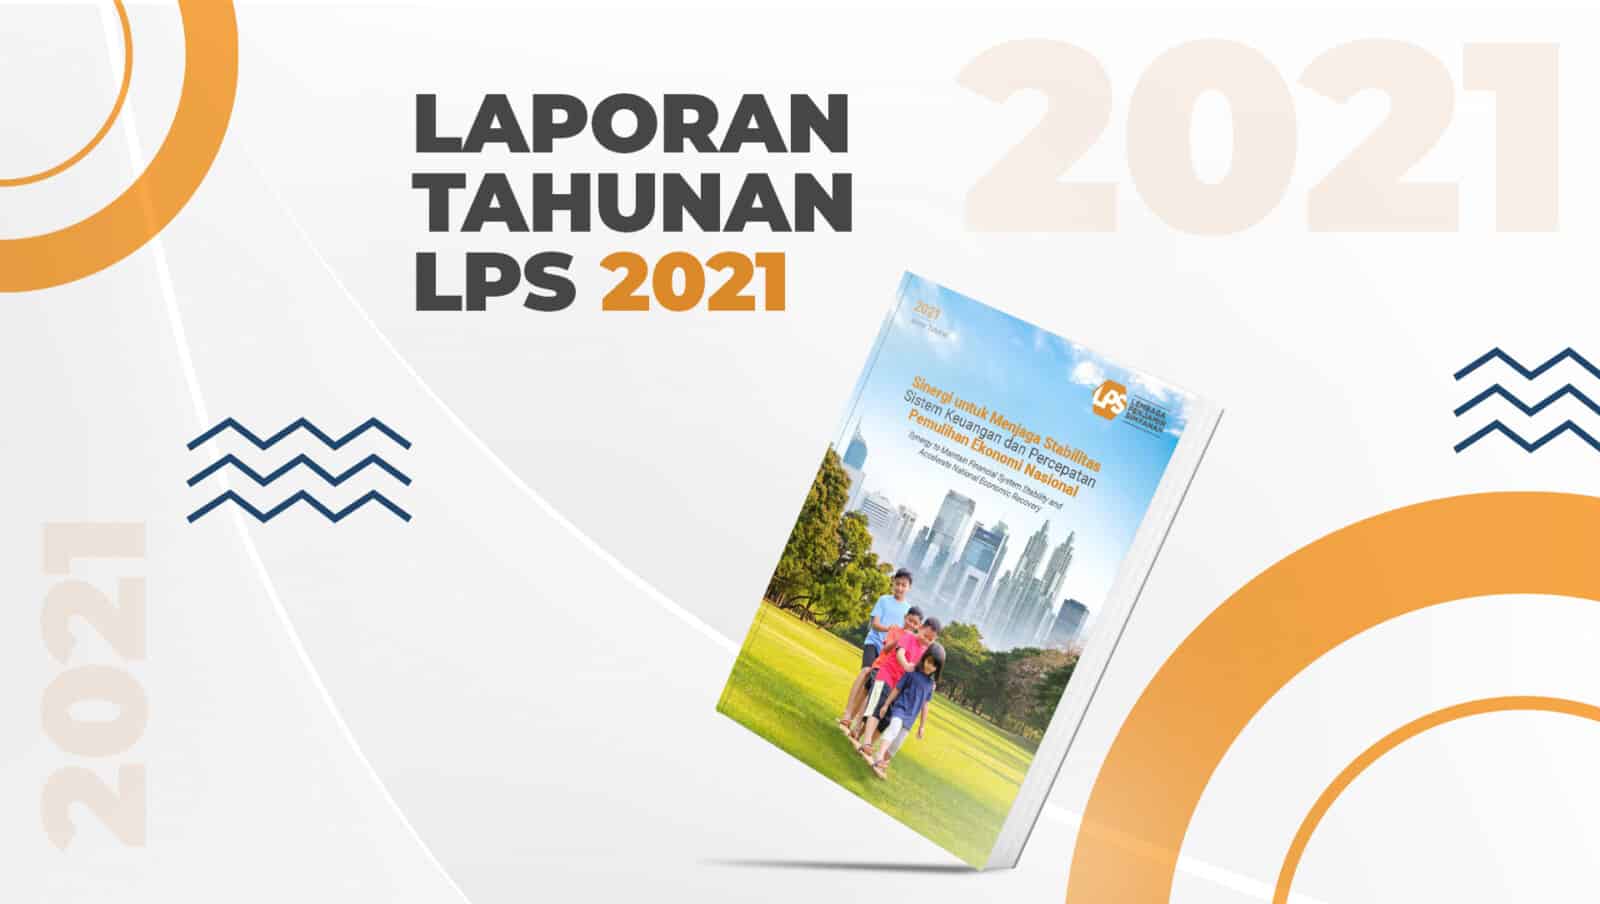 Laporan Tahunan LPS 2021